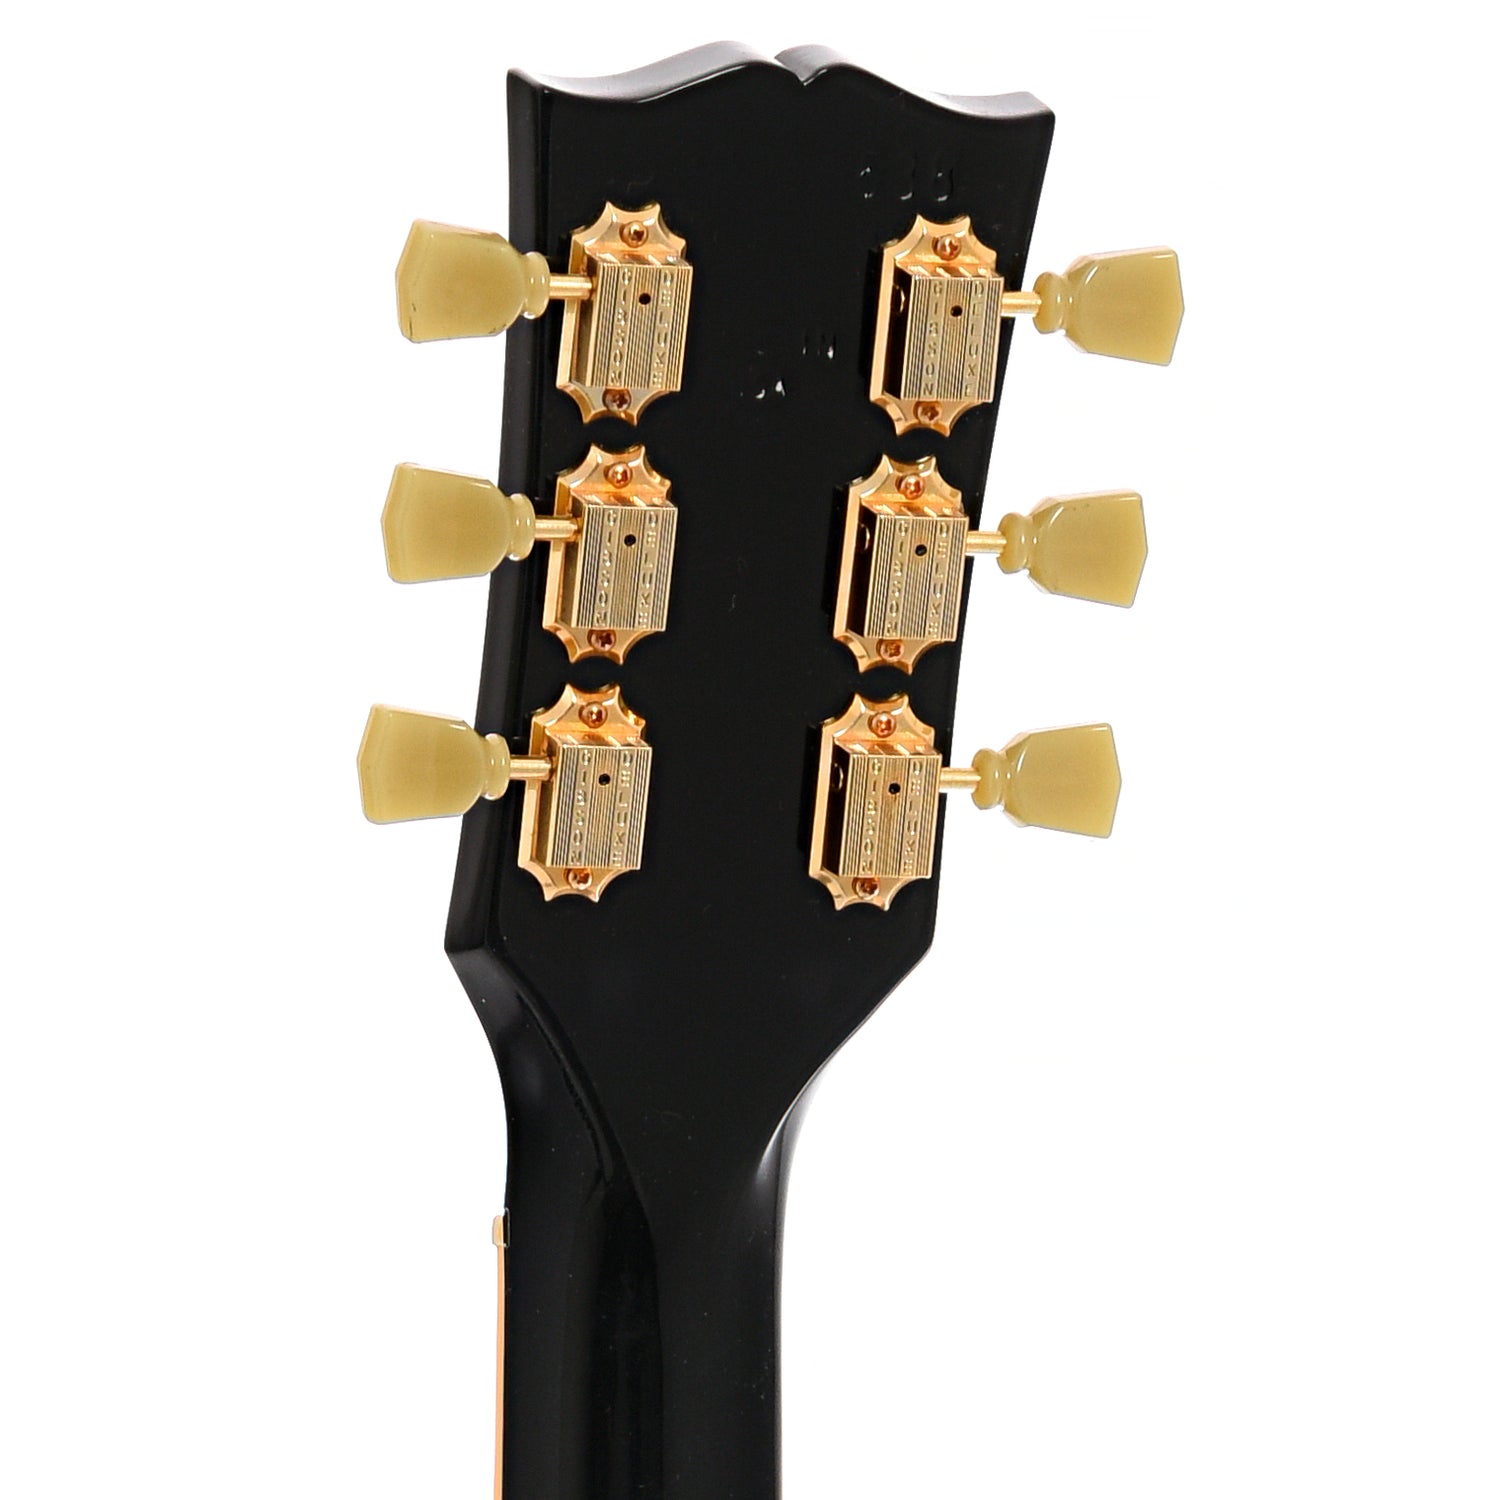 Back headstock of Gibson SG Custom